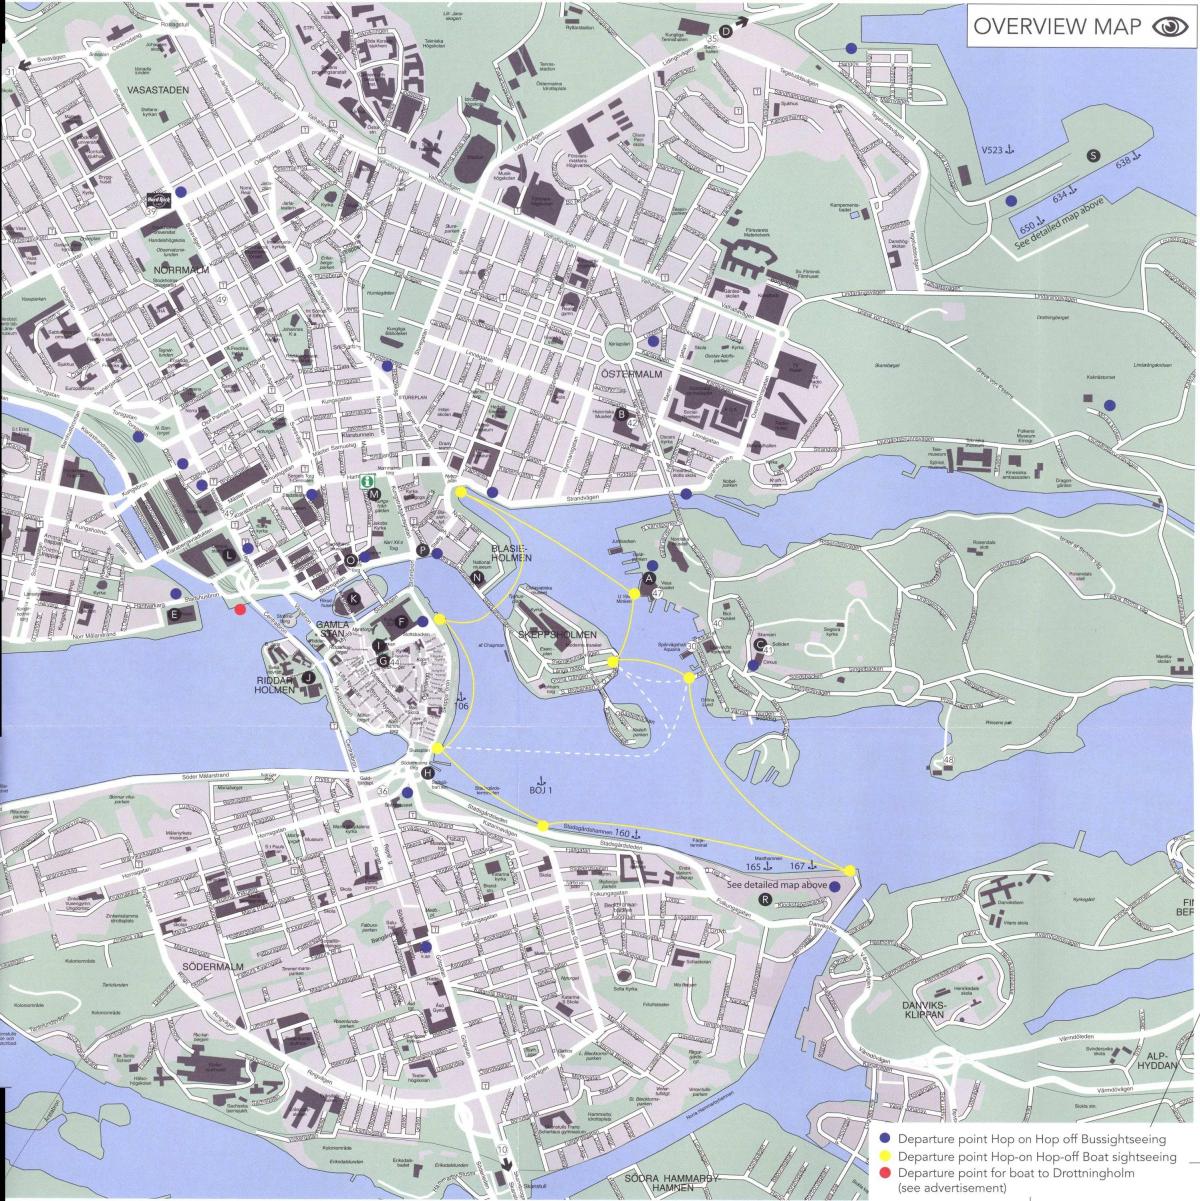 地图的斯德哥尔摩中心的